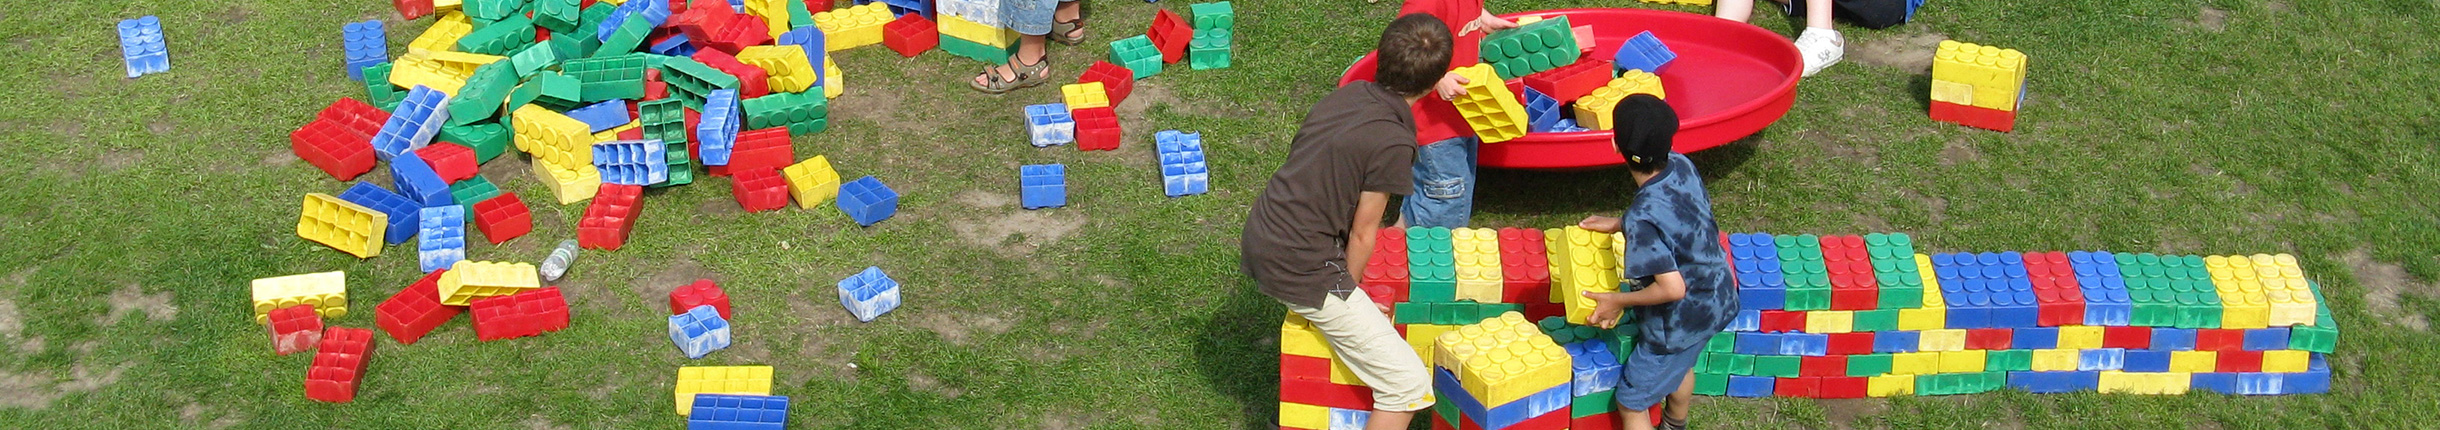 Kinder spielen mit großen Bausteinen auf einer grünen Wiese